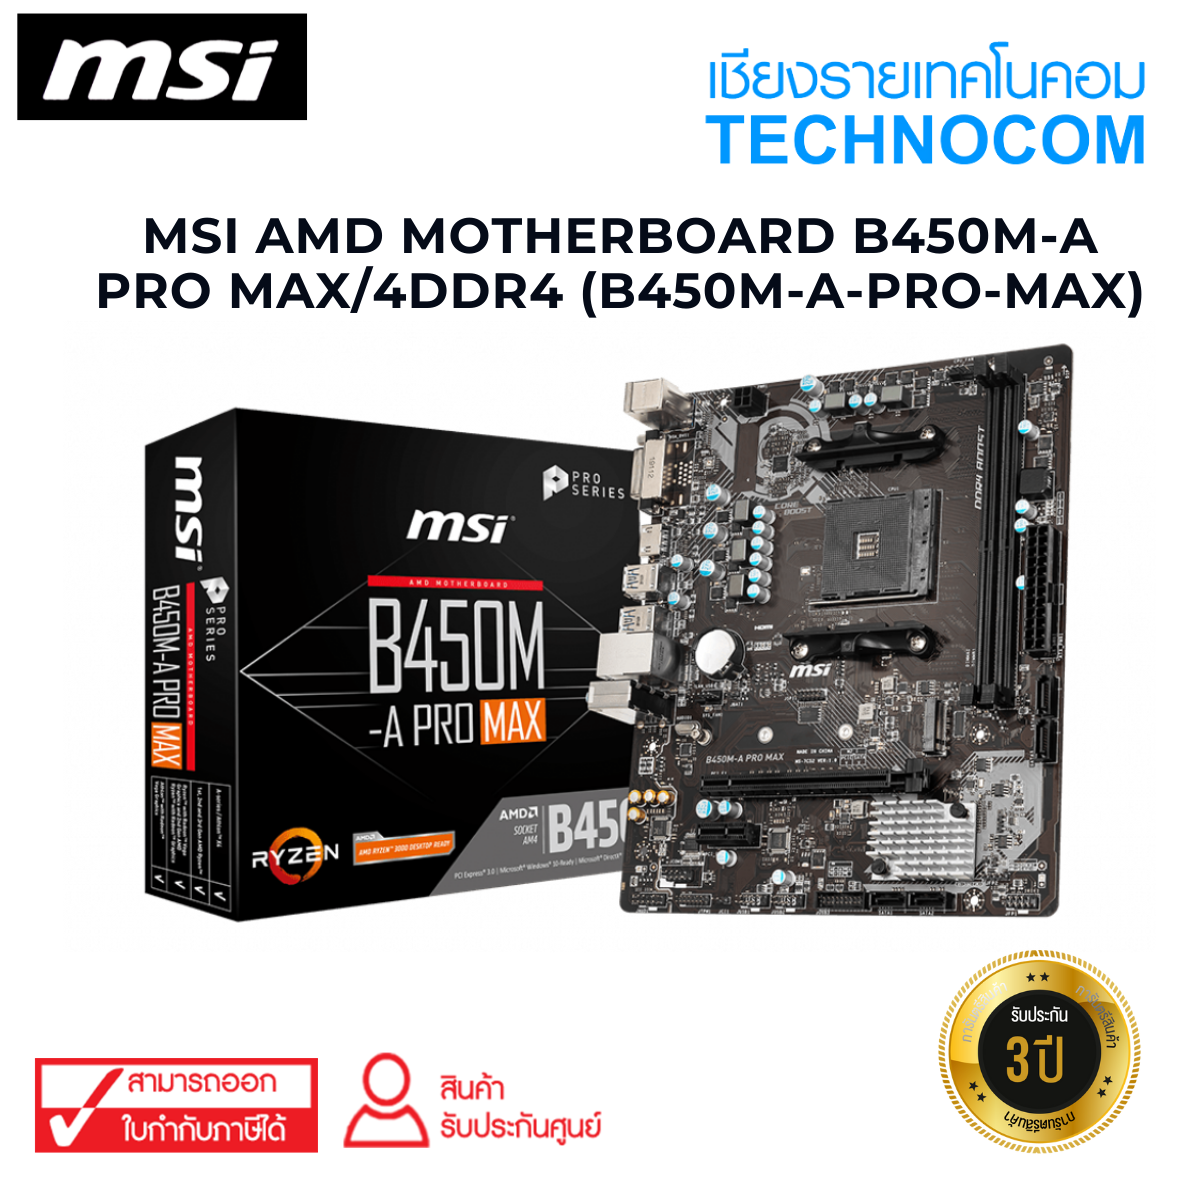 MSI AMD MOTHERBOARD B450M-A PRO MAX/4DDR4 (B450M-A-PRO-MAX)